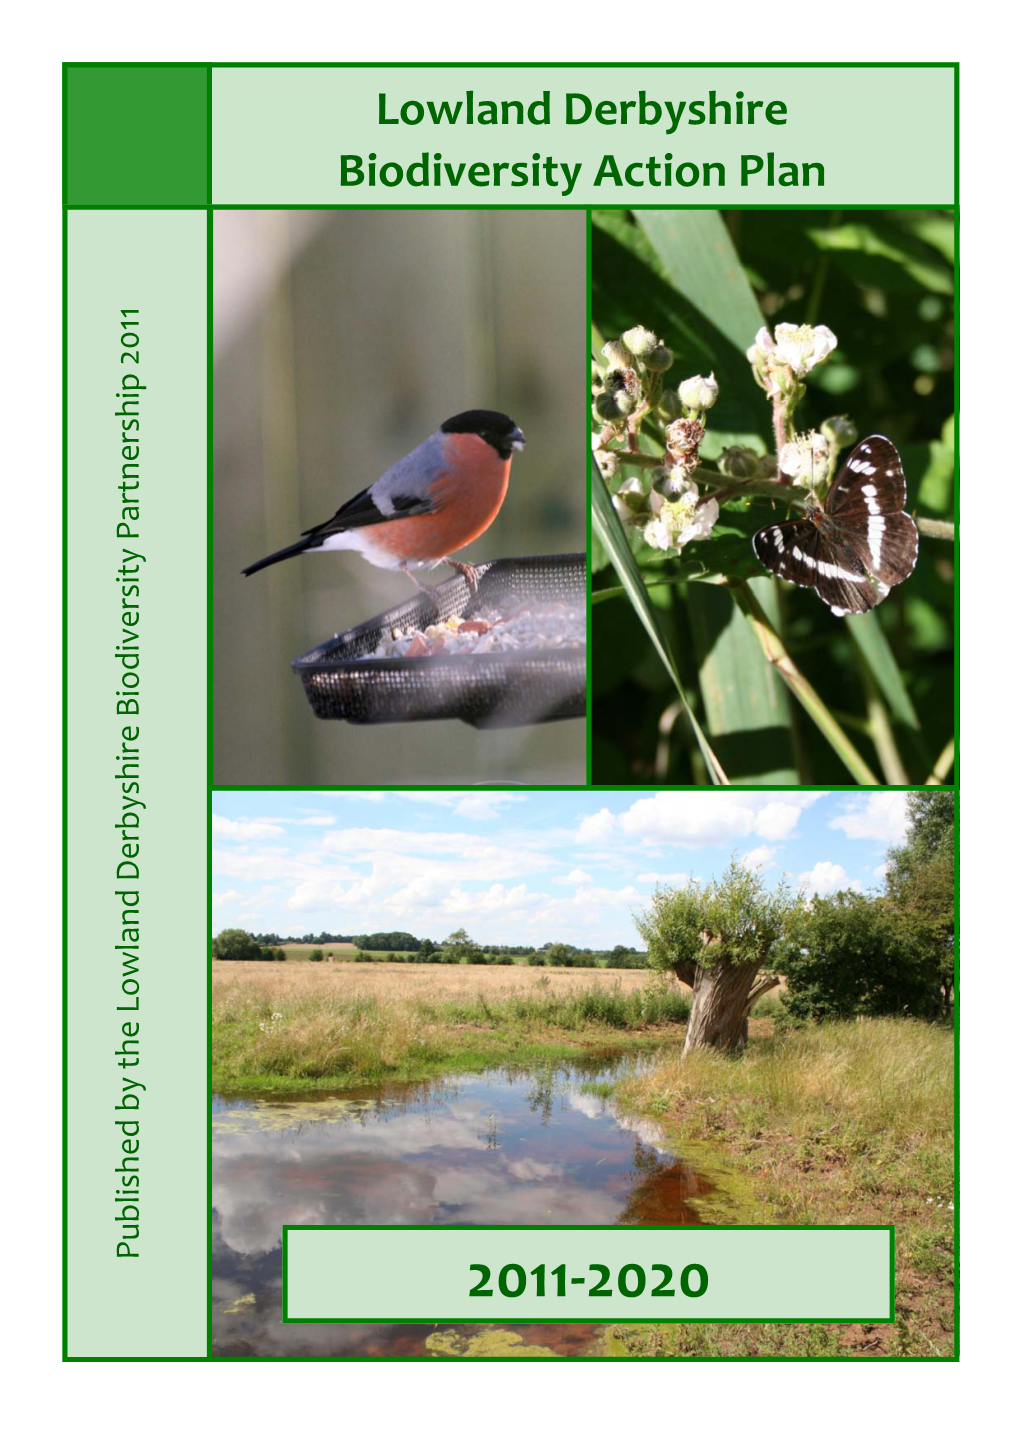 Lowland Derbyshire Biodiversity Action Plan 2011-2020